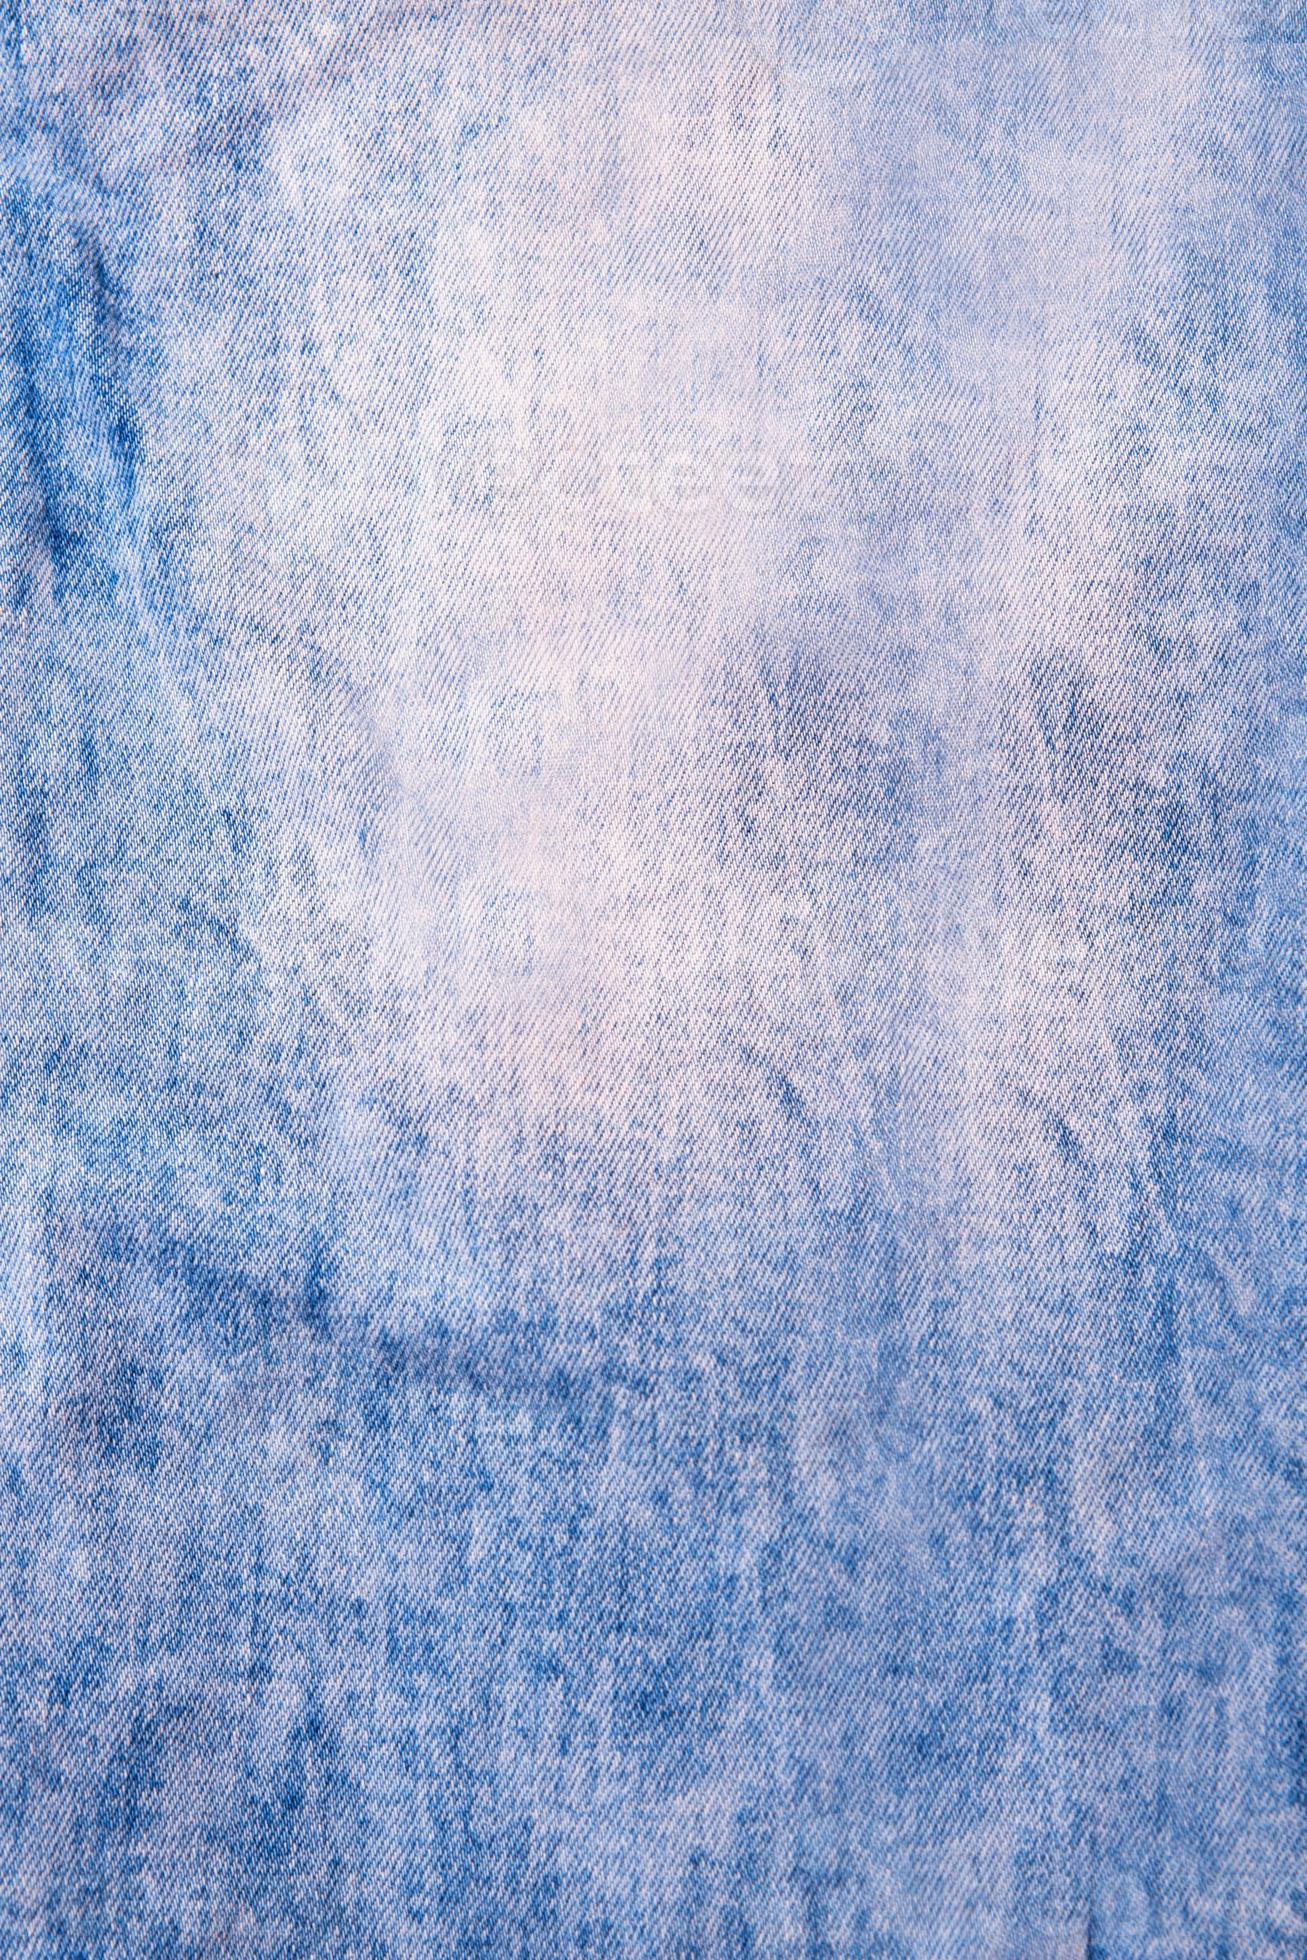 blauwe jean achtergrond close-up, blauwe denim jeans textuur, background foto